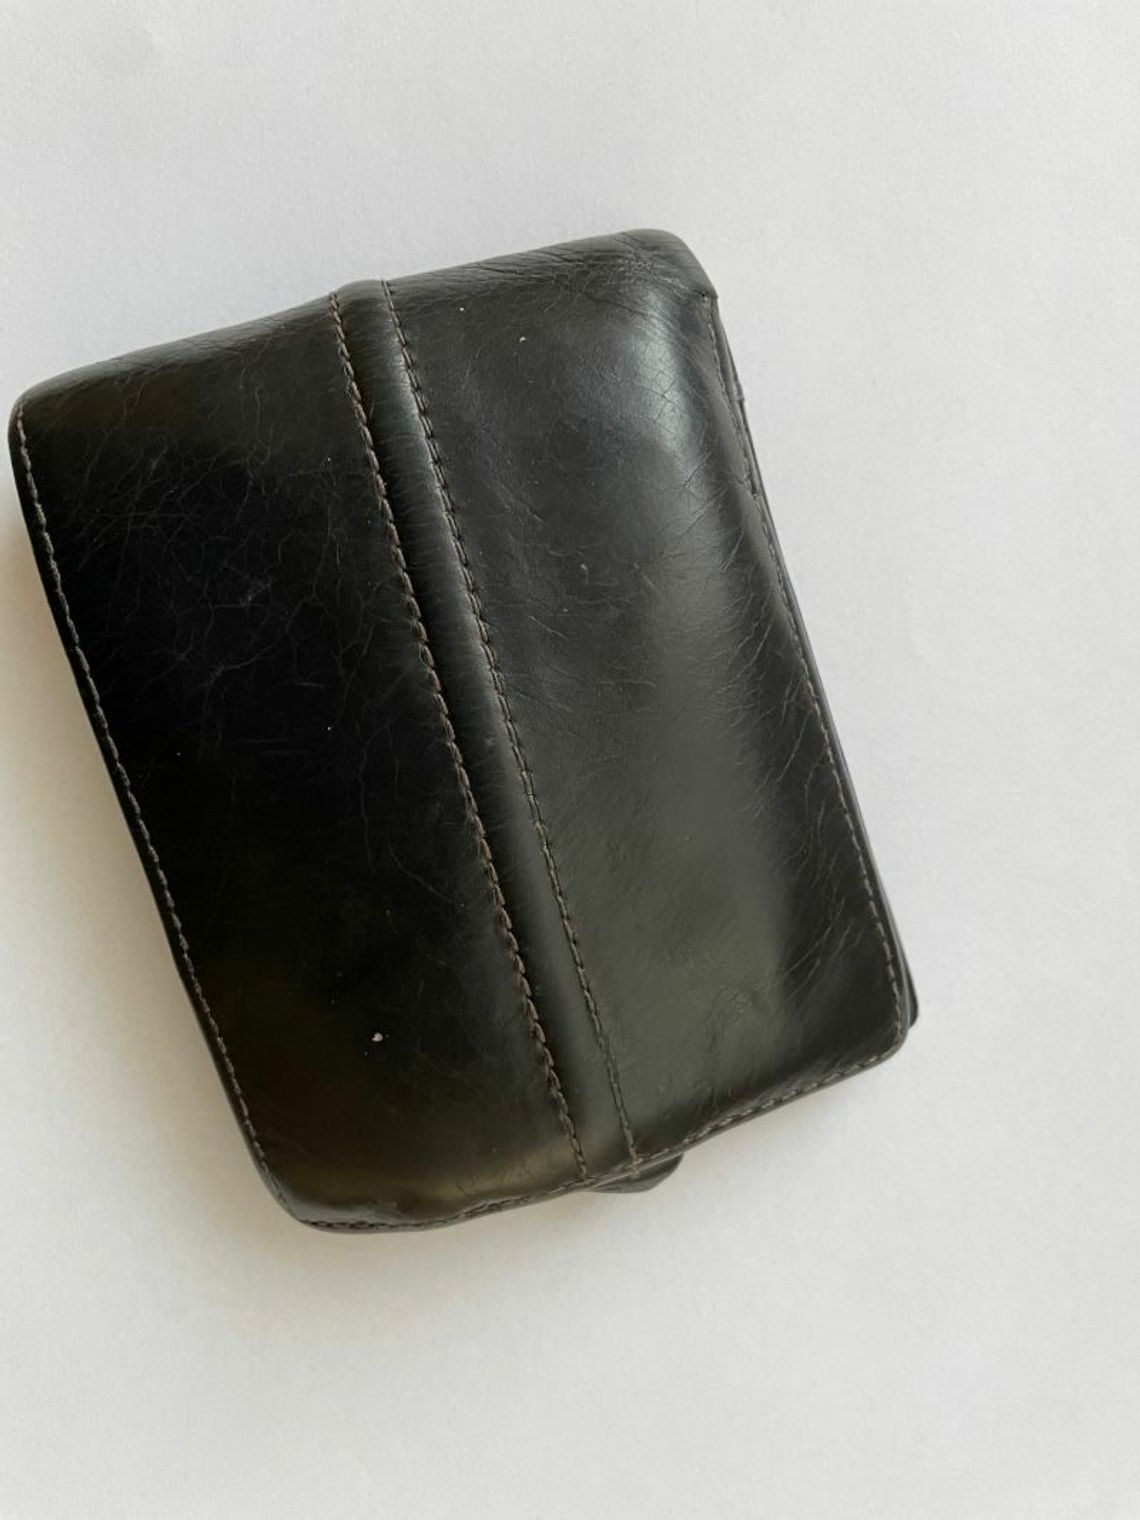 Polcija poszukuje właściciela zgubionego portfela